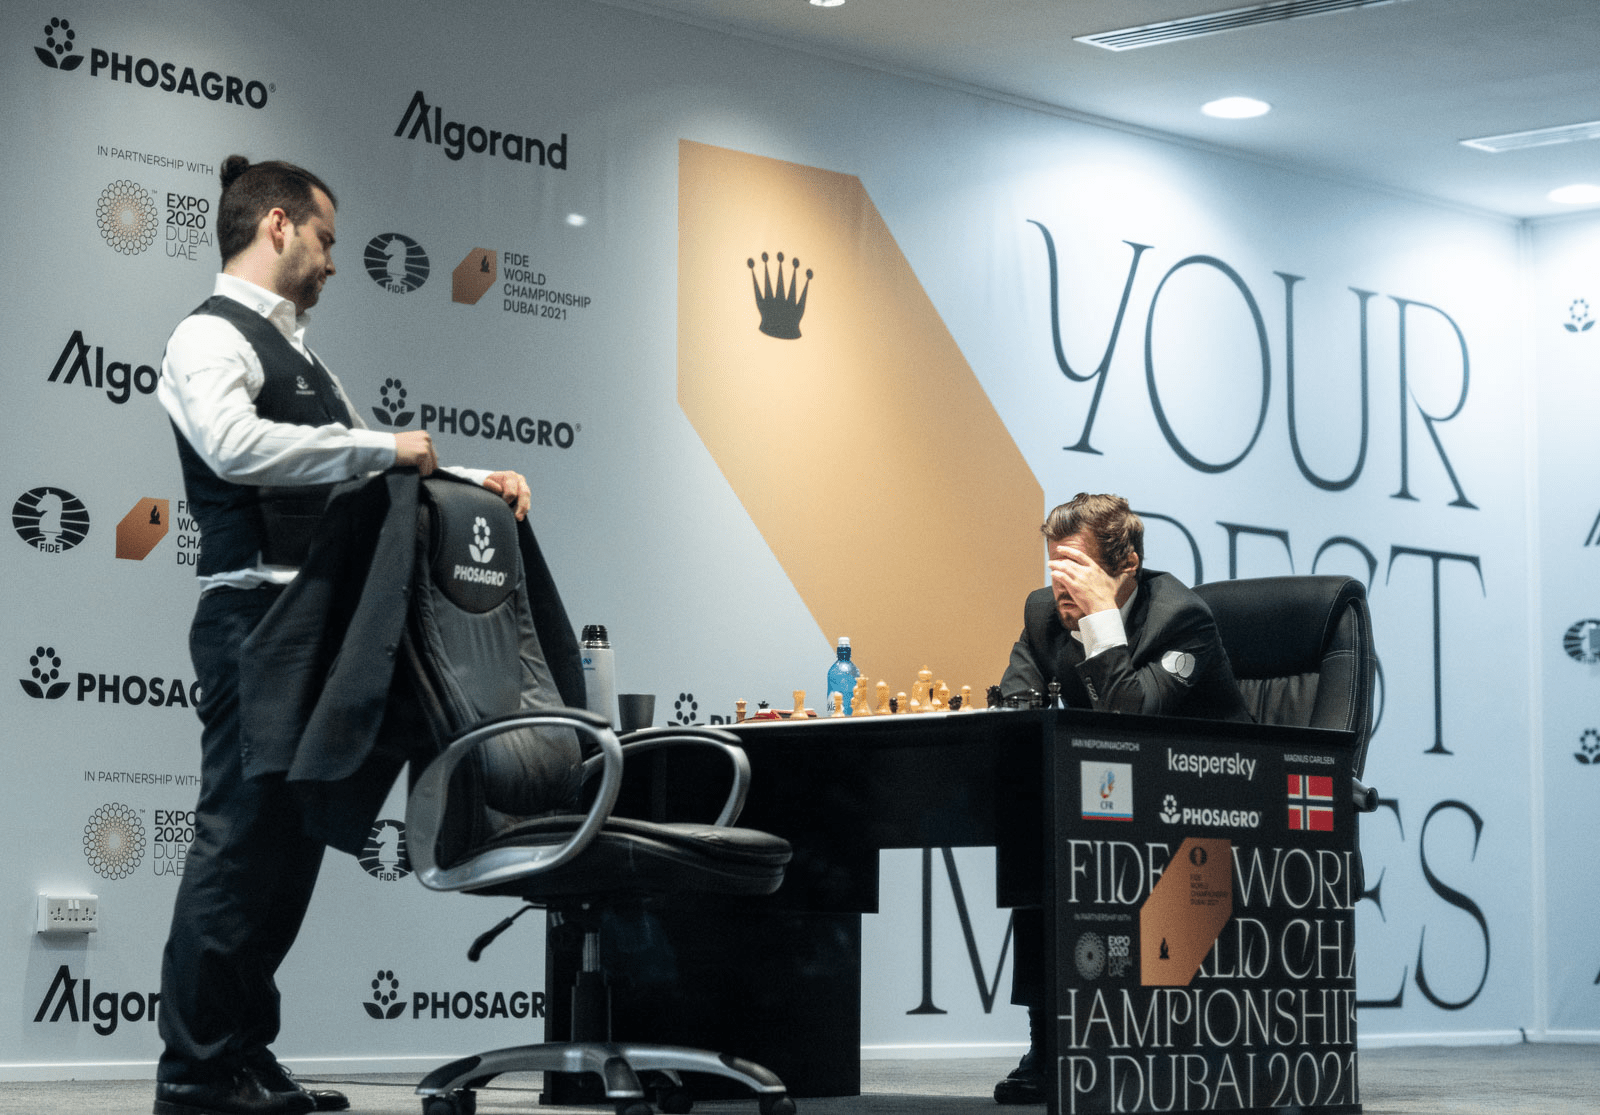 Campeonato Mundial de Xadrez da FIDE - partida 3: Magnus à prova de balas  de Negras 